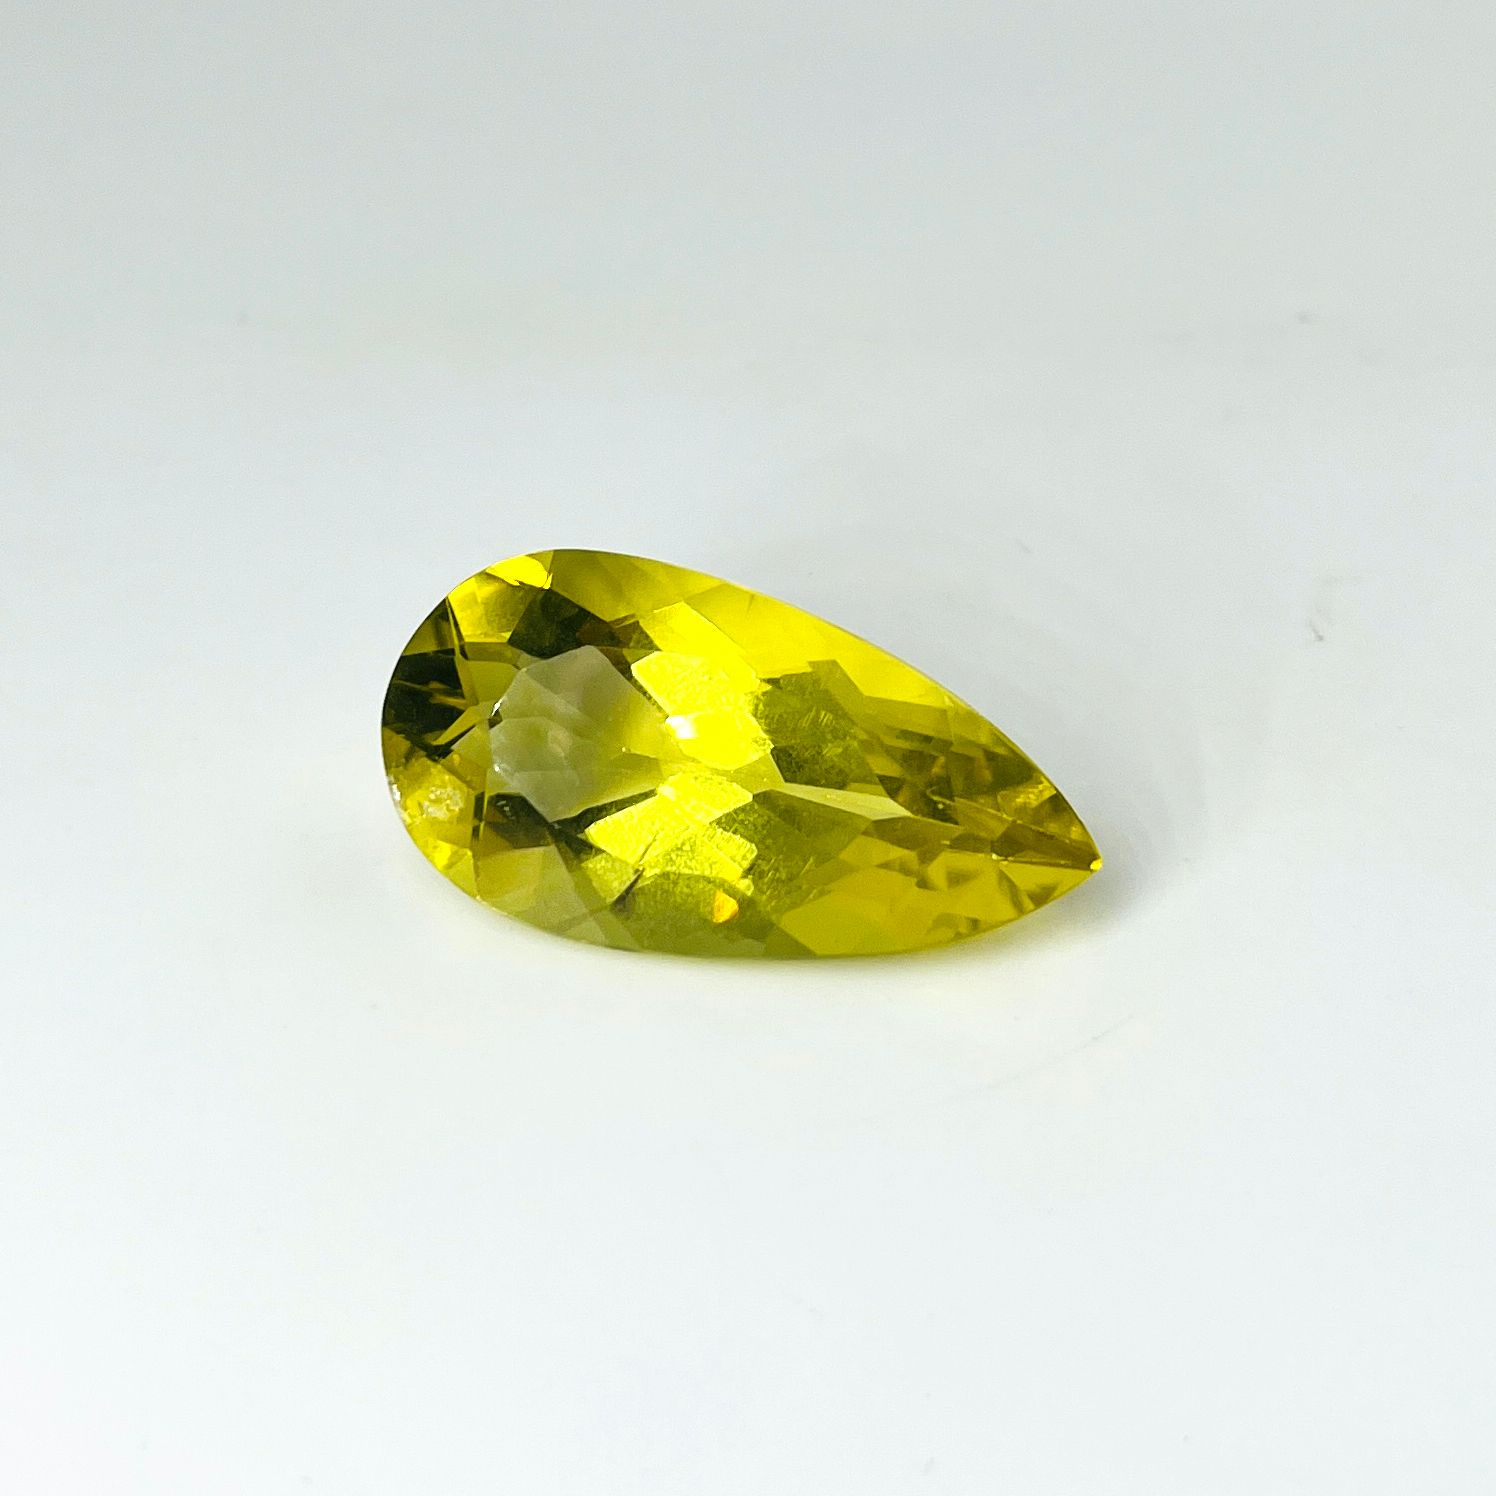 Null Pear cut lemon quartz weighing 38.09 cts.